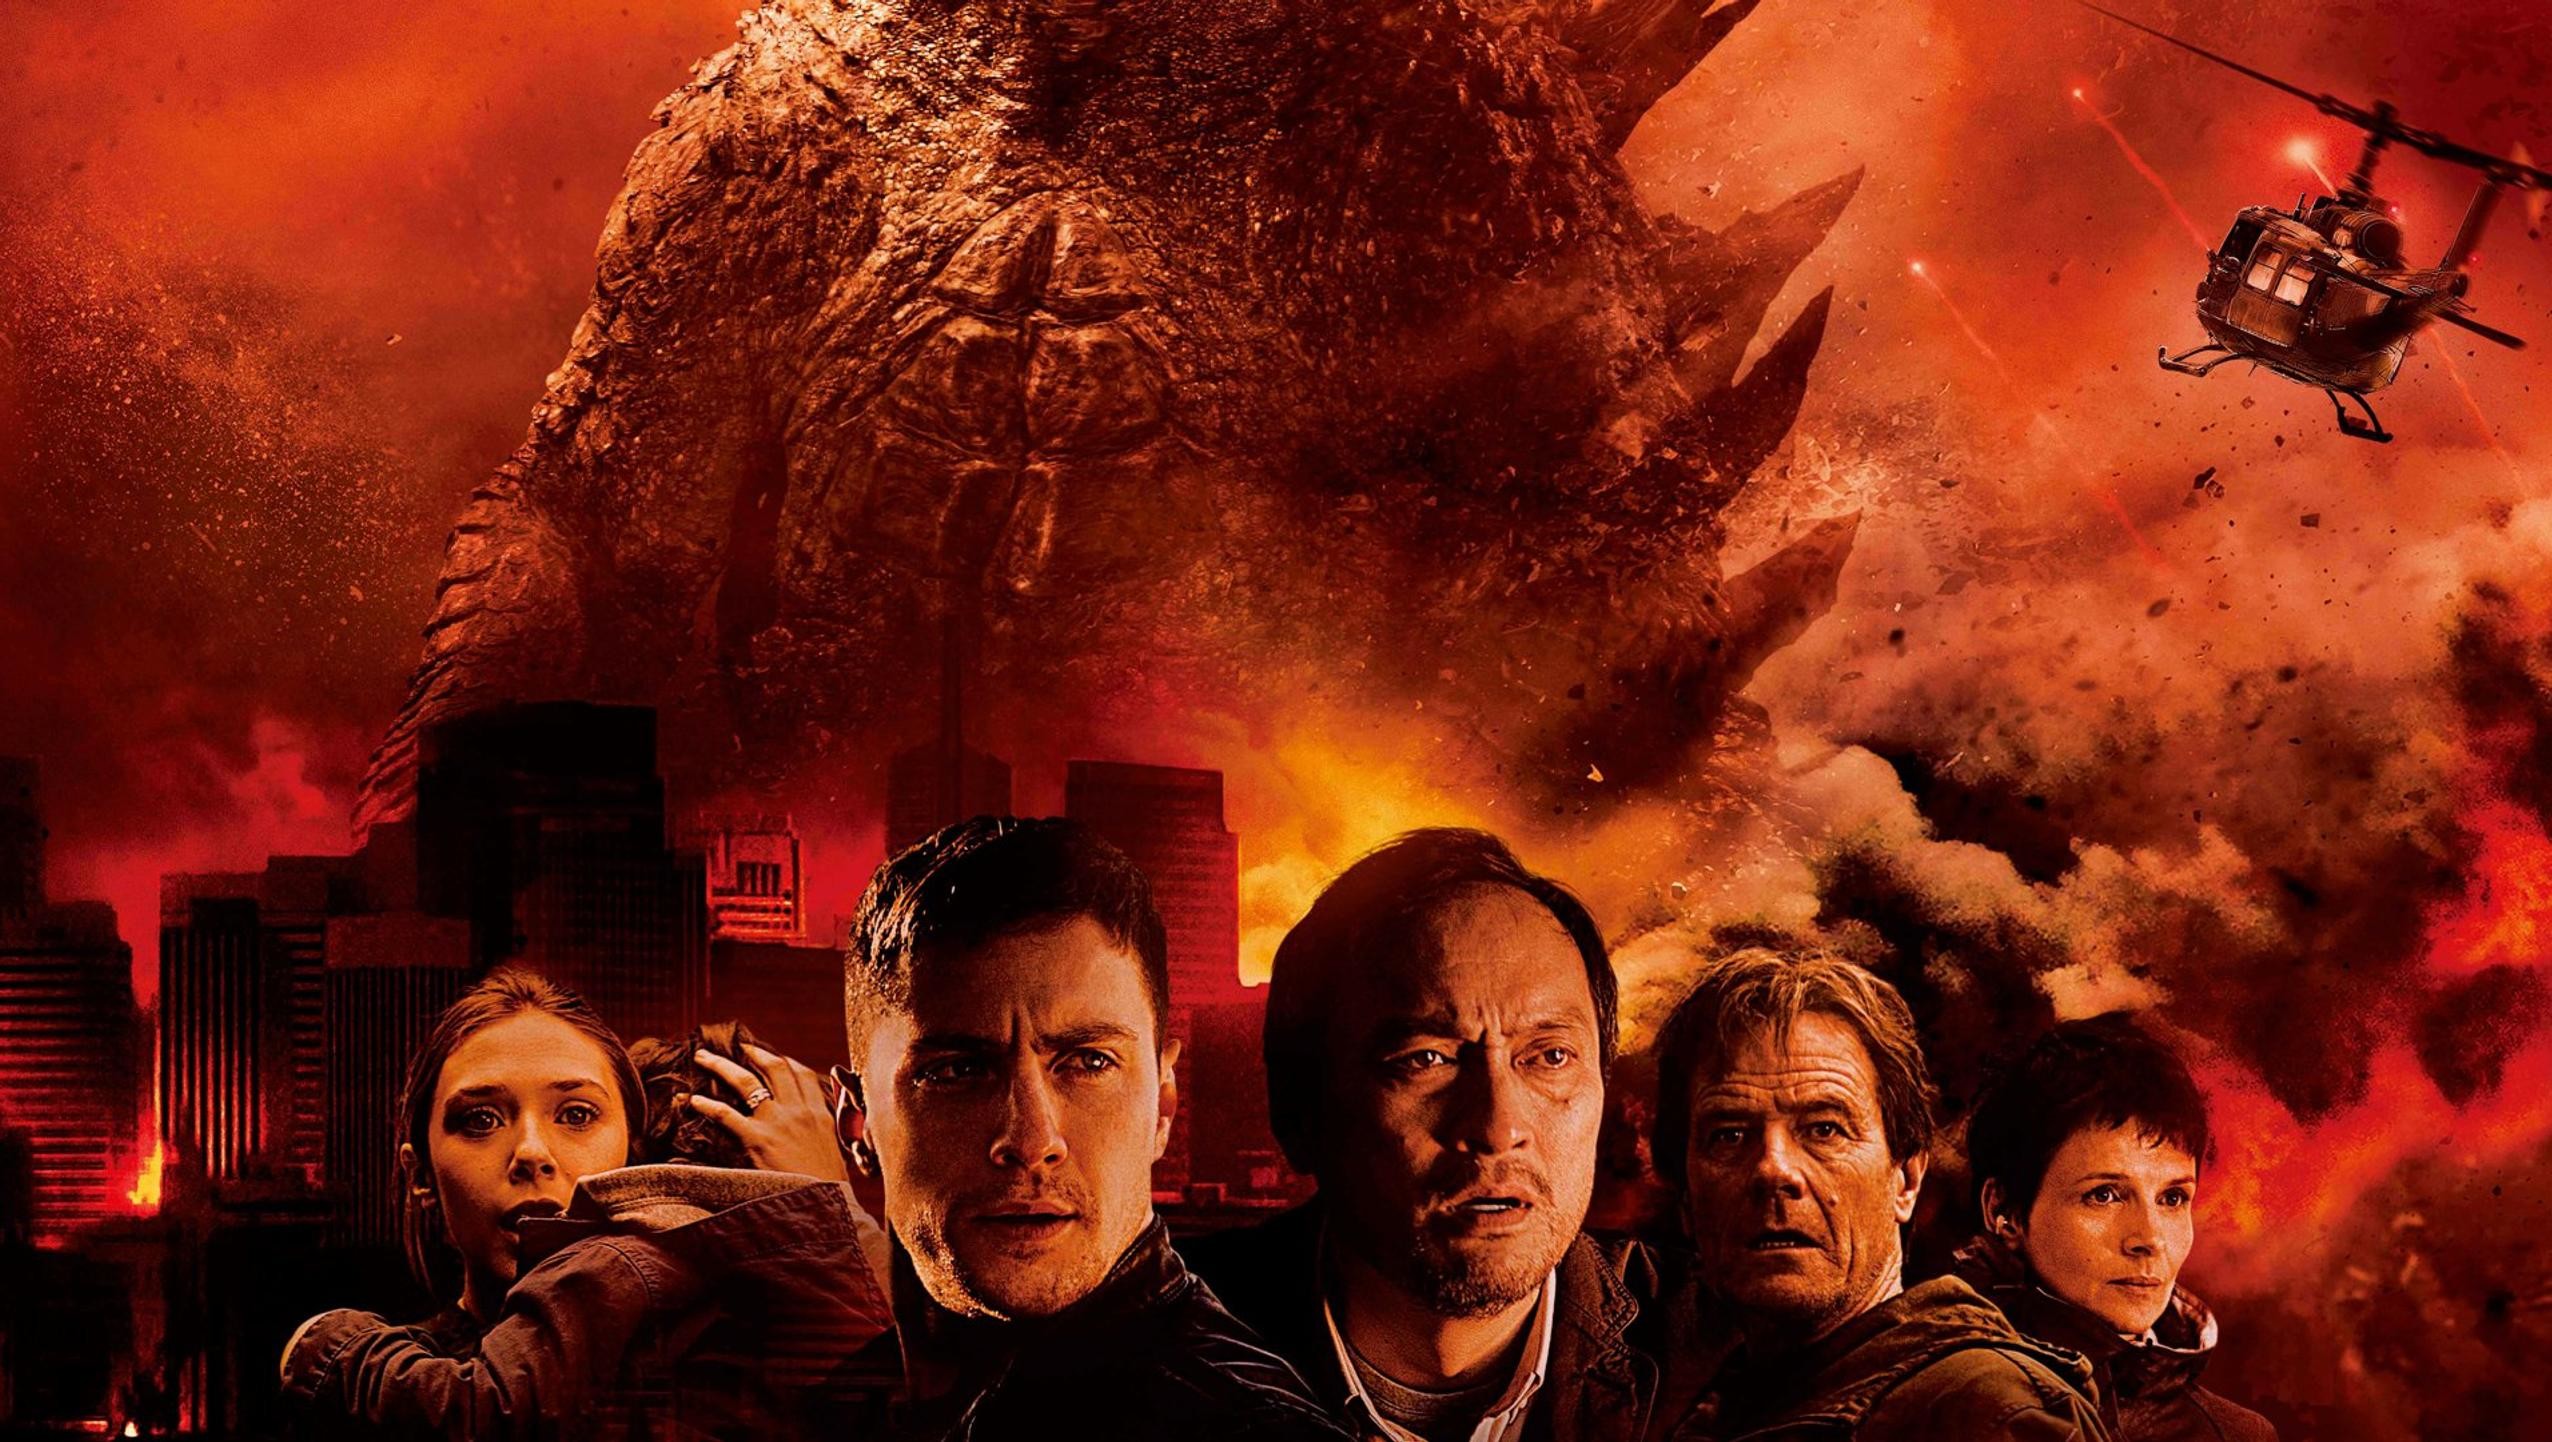 2552x1442 Wallpaper for "Godzilla" (2014)